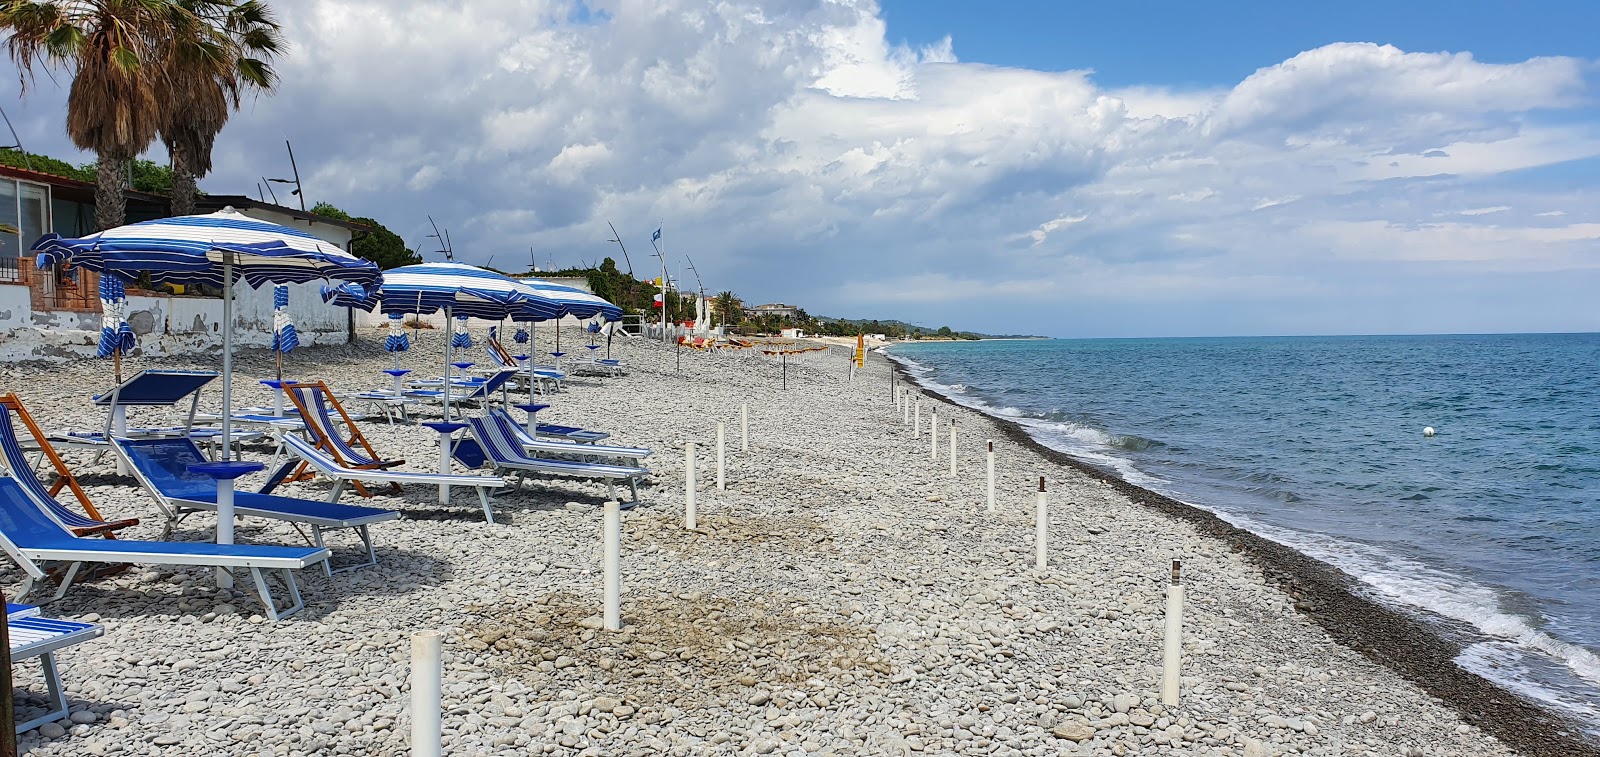 Trebisacce beach'in fotoğrafı - rahatlamayı sevenler arasında popüler bir yer